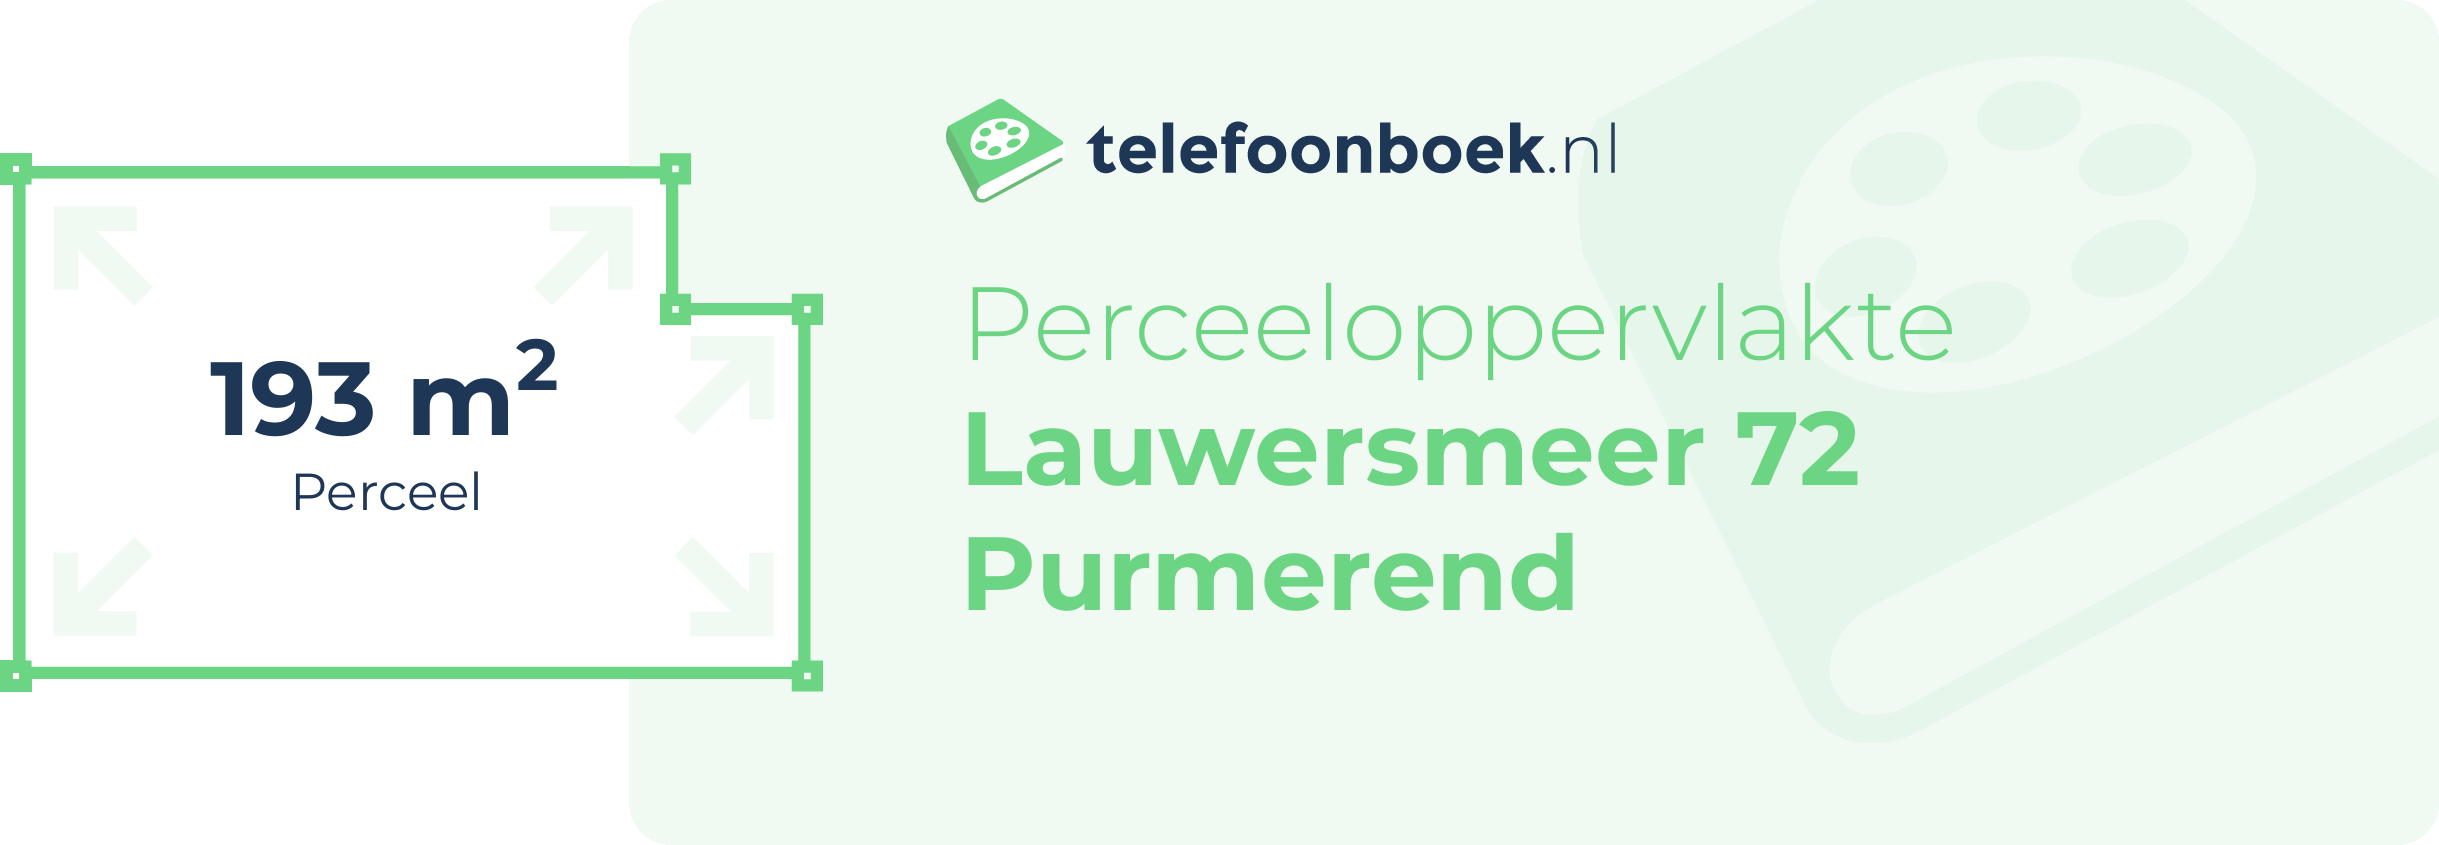 Perceeloppervlakte Lauwersmeer 72 Purmerend